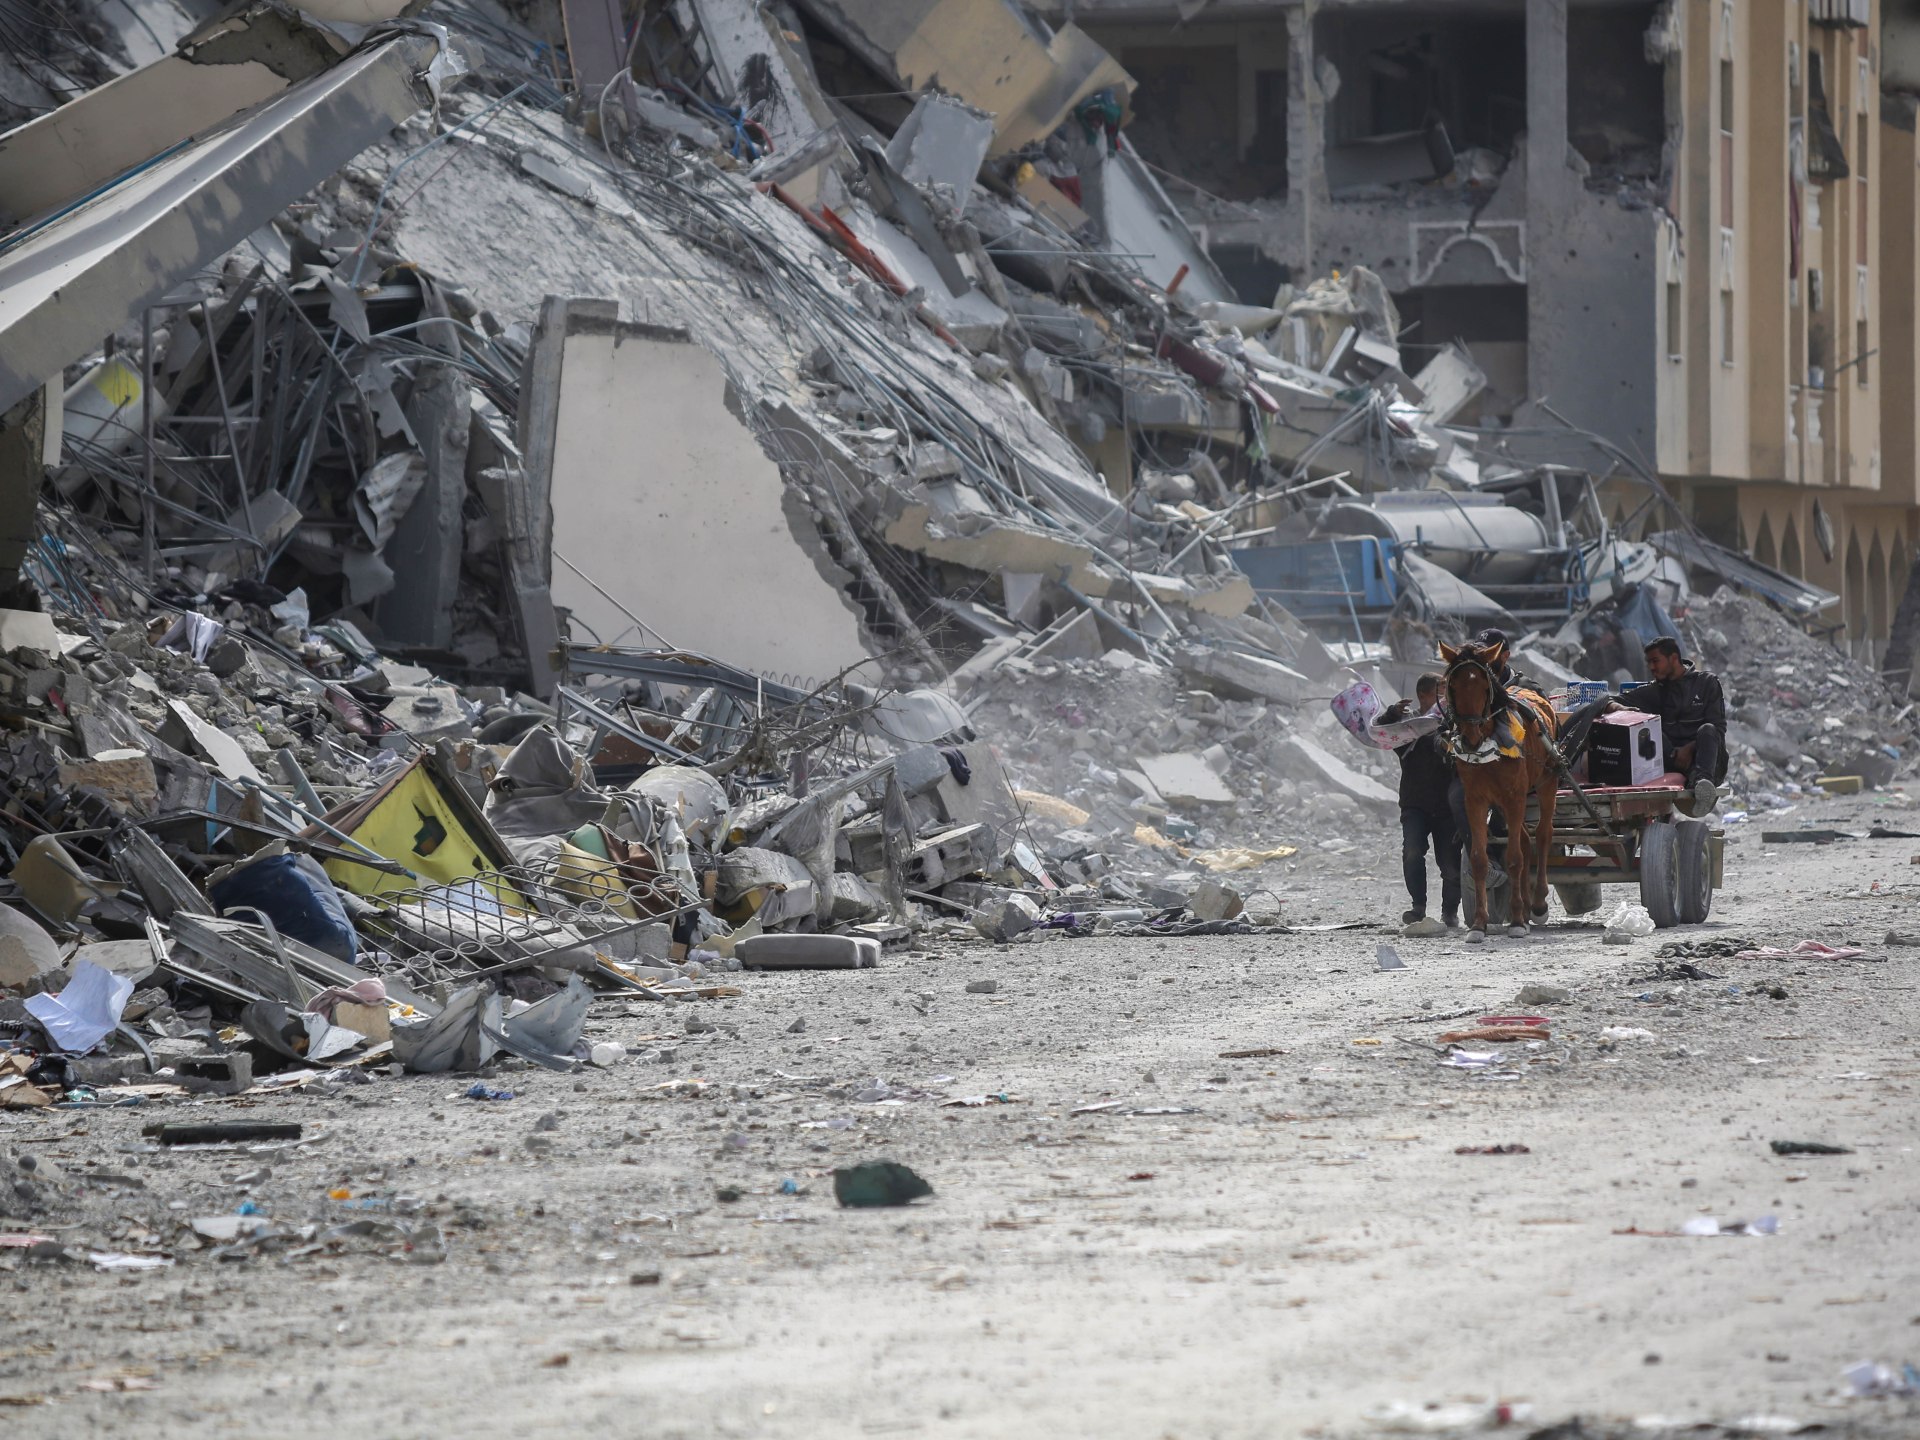 أبرز تطورات اليوم الـ163 من الحرب الإسرائيلية على غزة | أخبار – البوكس نيوز